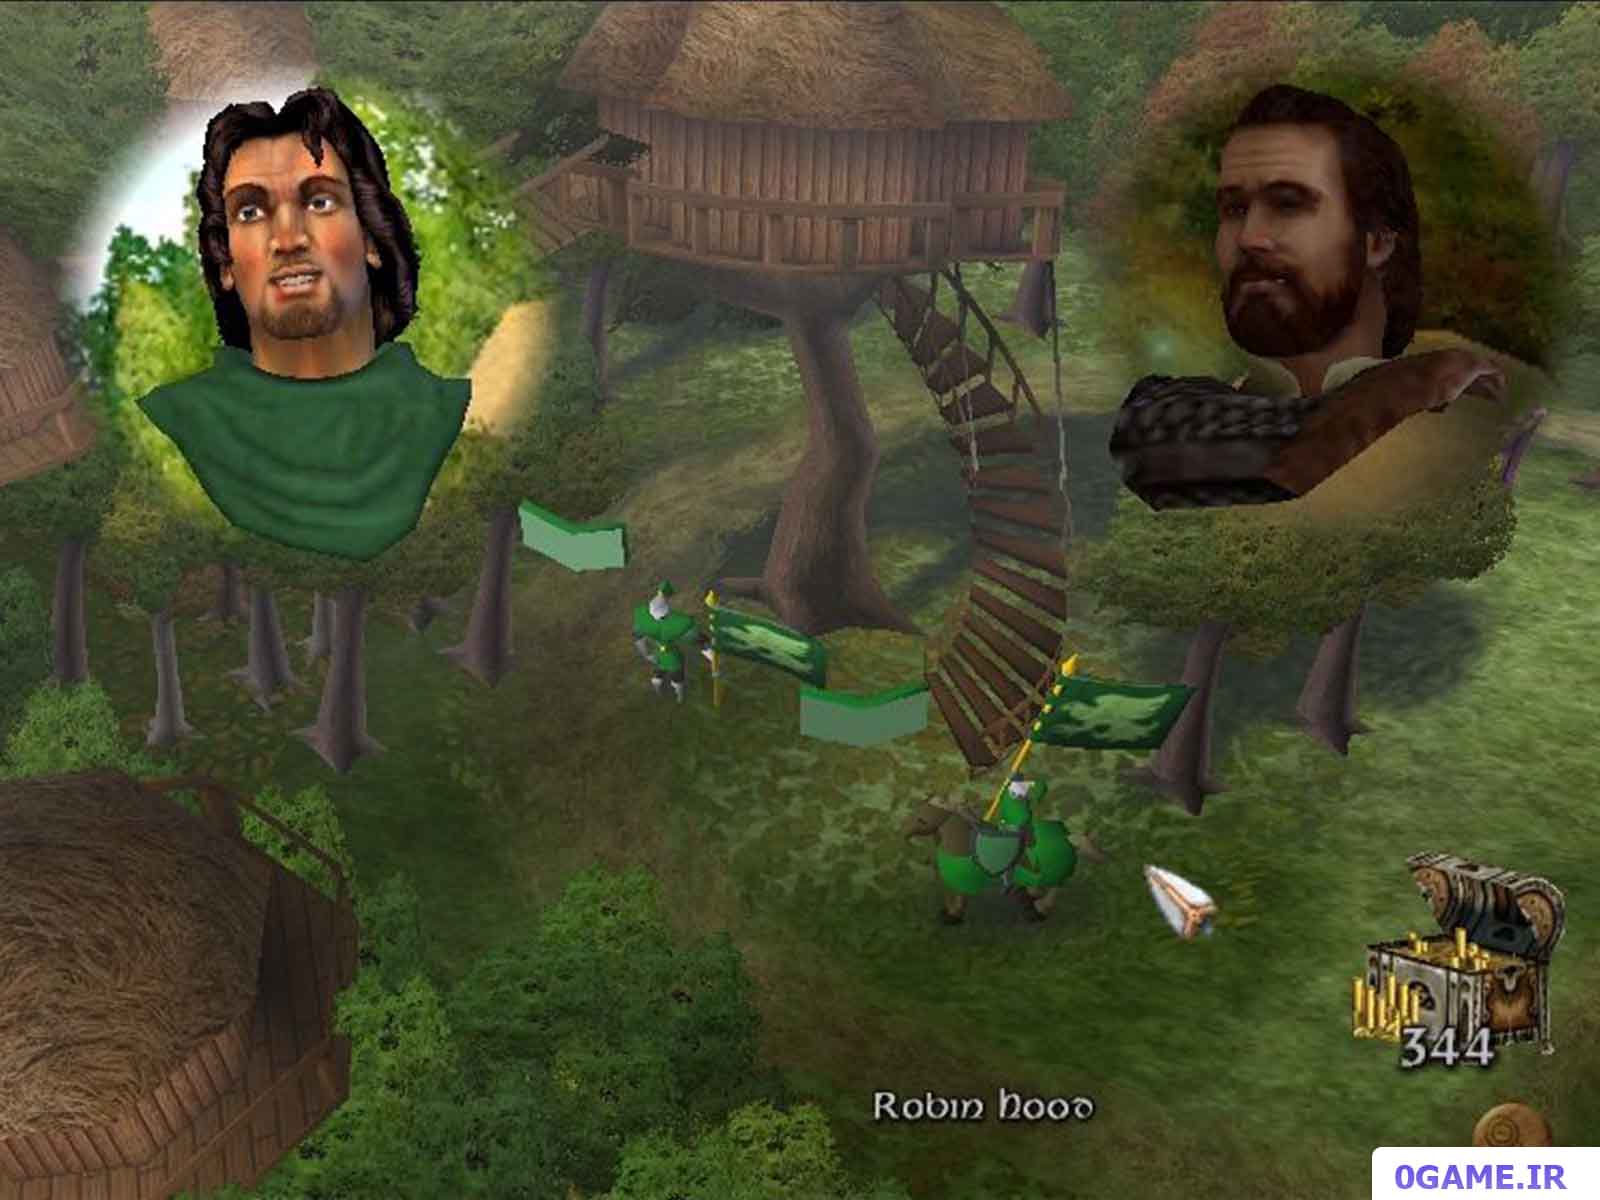 دانلود بازی رابین هود : مدافع تاج (Robin Hood: Defender of the Crown) نسخه کامل برای کامپیوتر